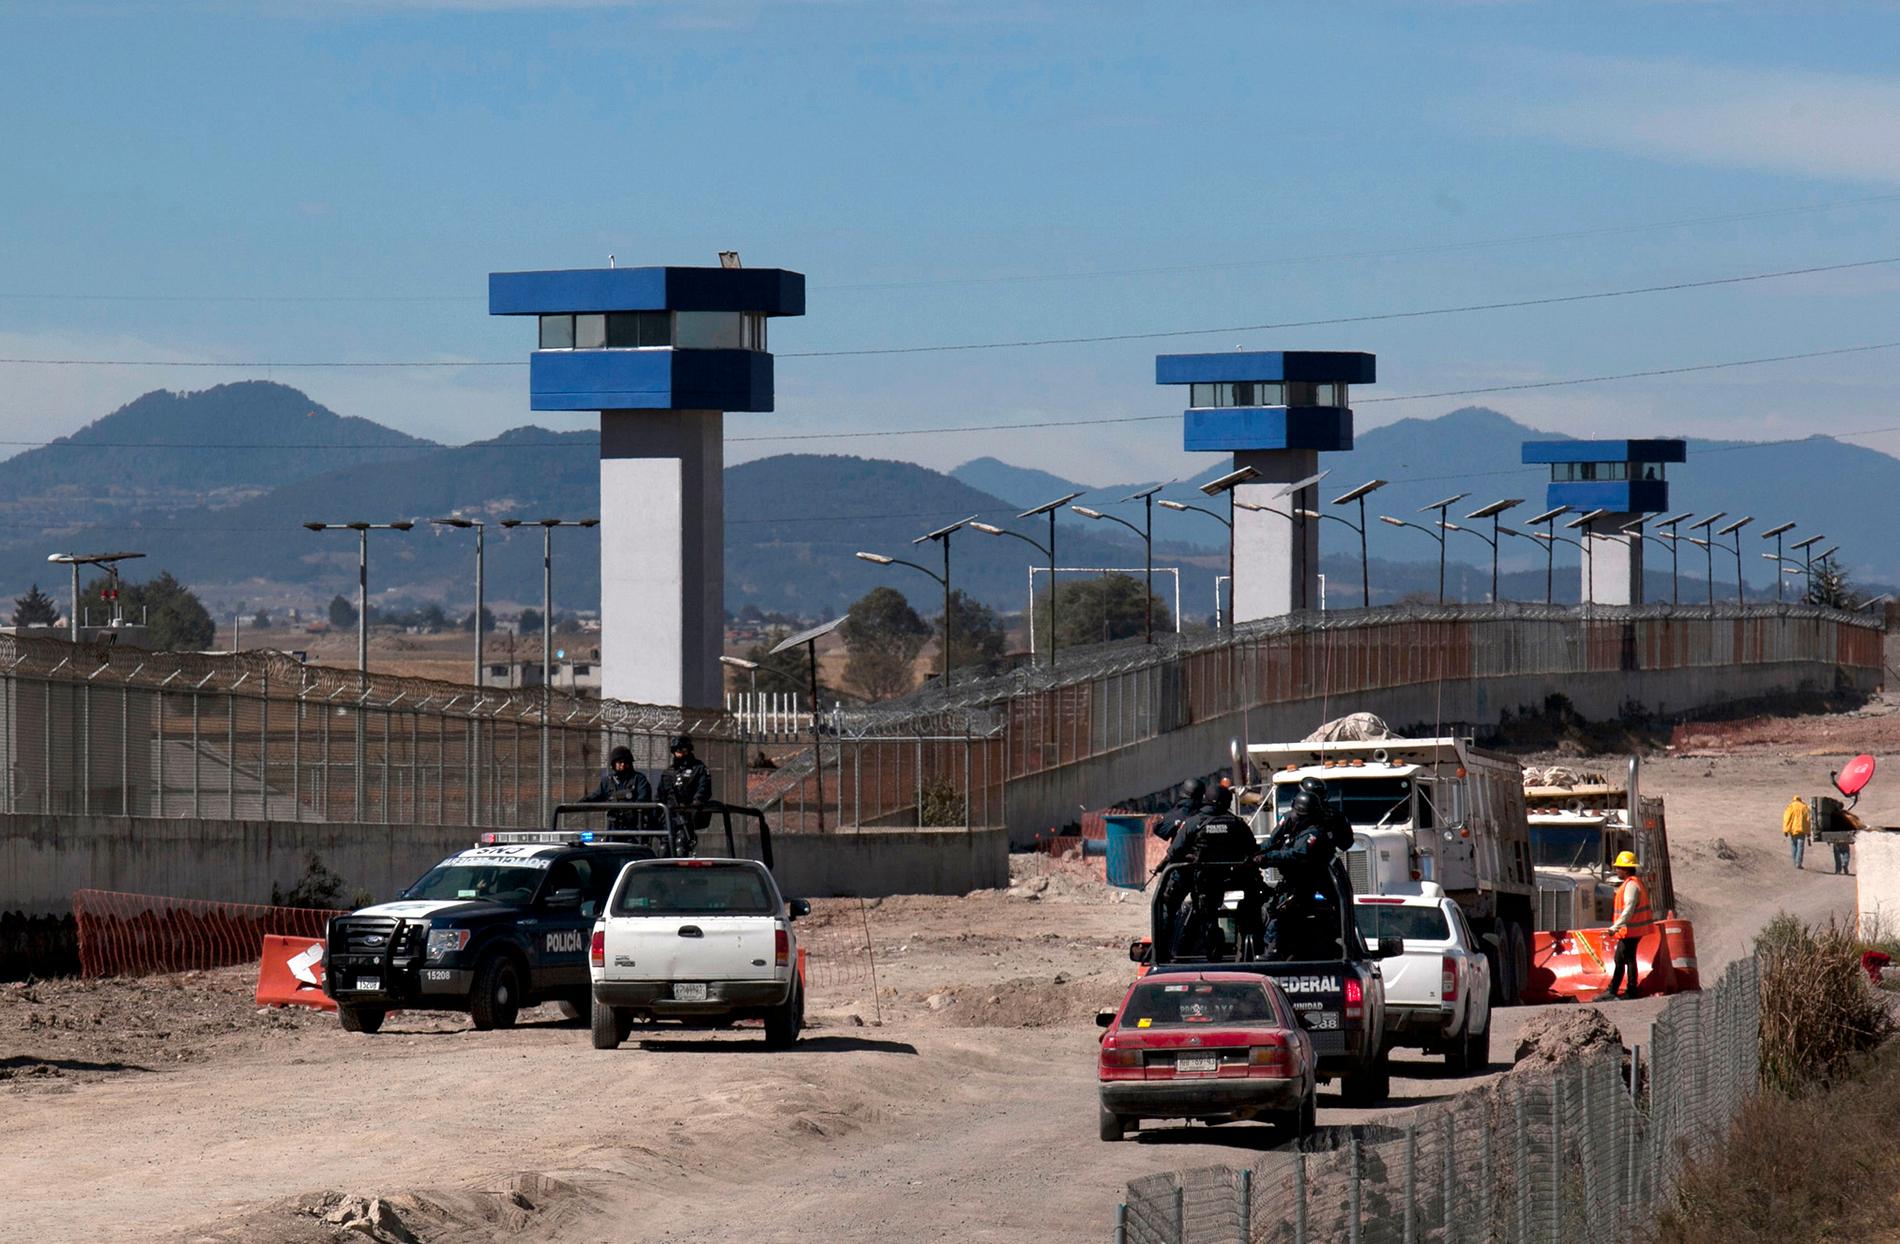 Federala polisen patrullerar utanför högsäkerhetsfängelset  Altiplano dit Joaquin "El Chapo" Guzman förts. Det är samma fängelse varifrån han flydde genom en tunnel den 11 juli 2015. ,